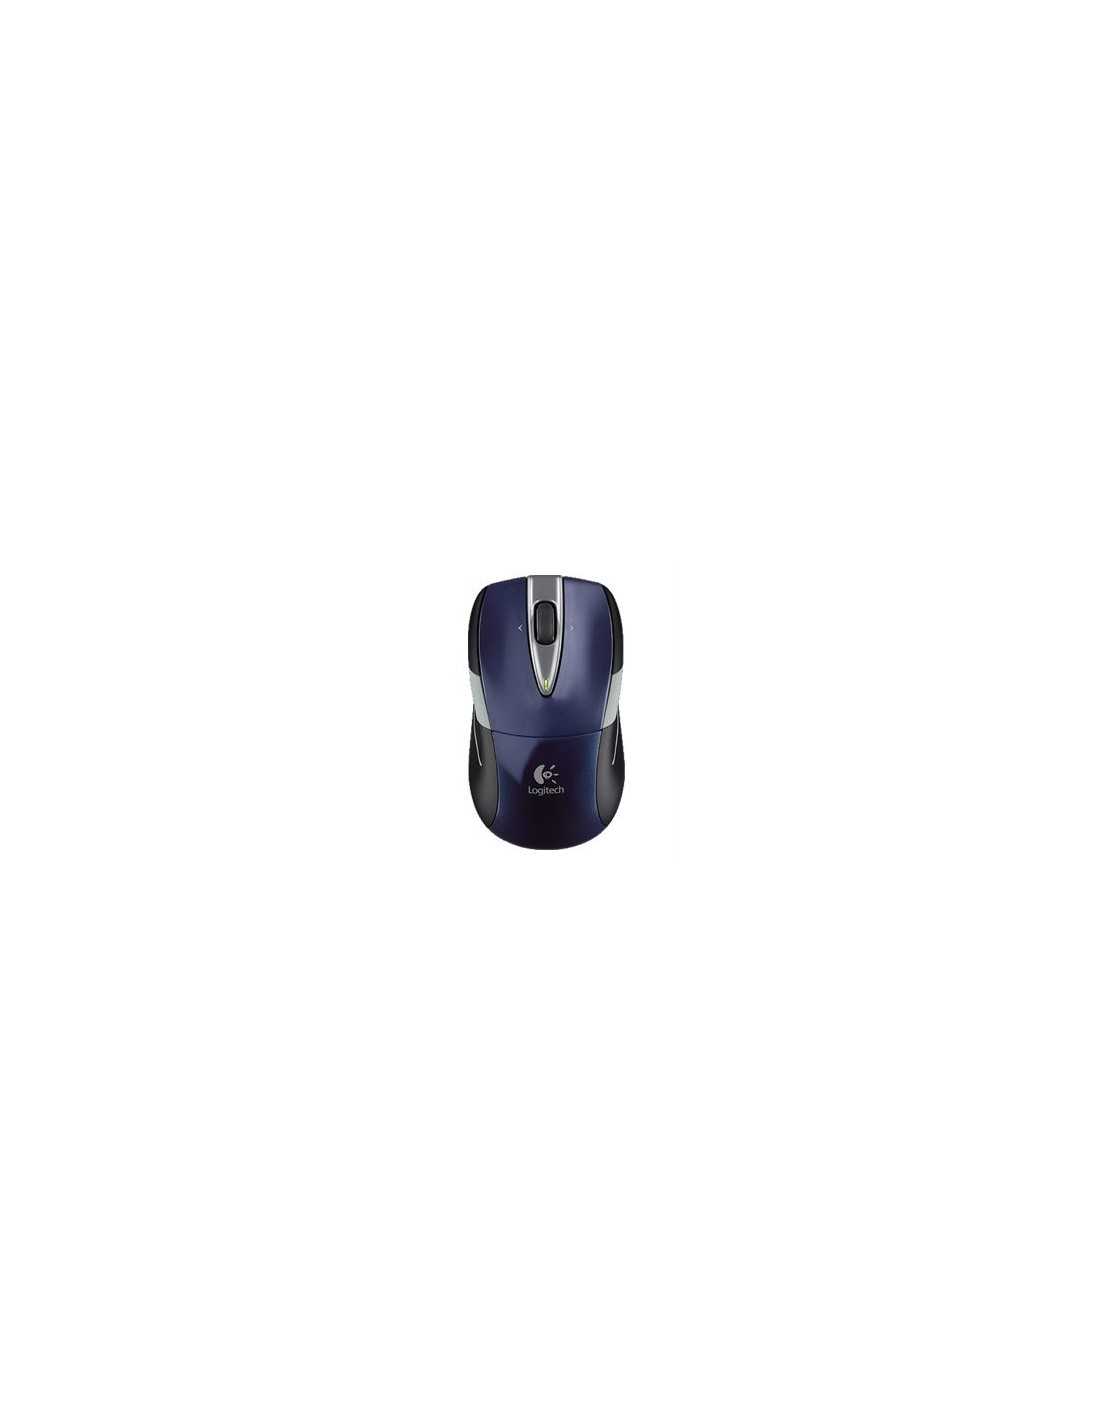 Logitech wireless mouse m525 black usb купить по акционной цене , отзывы и обзоры.